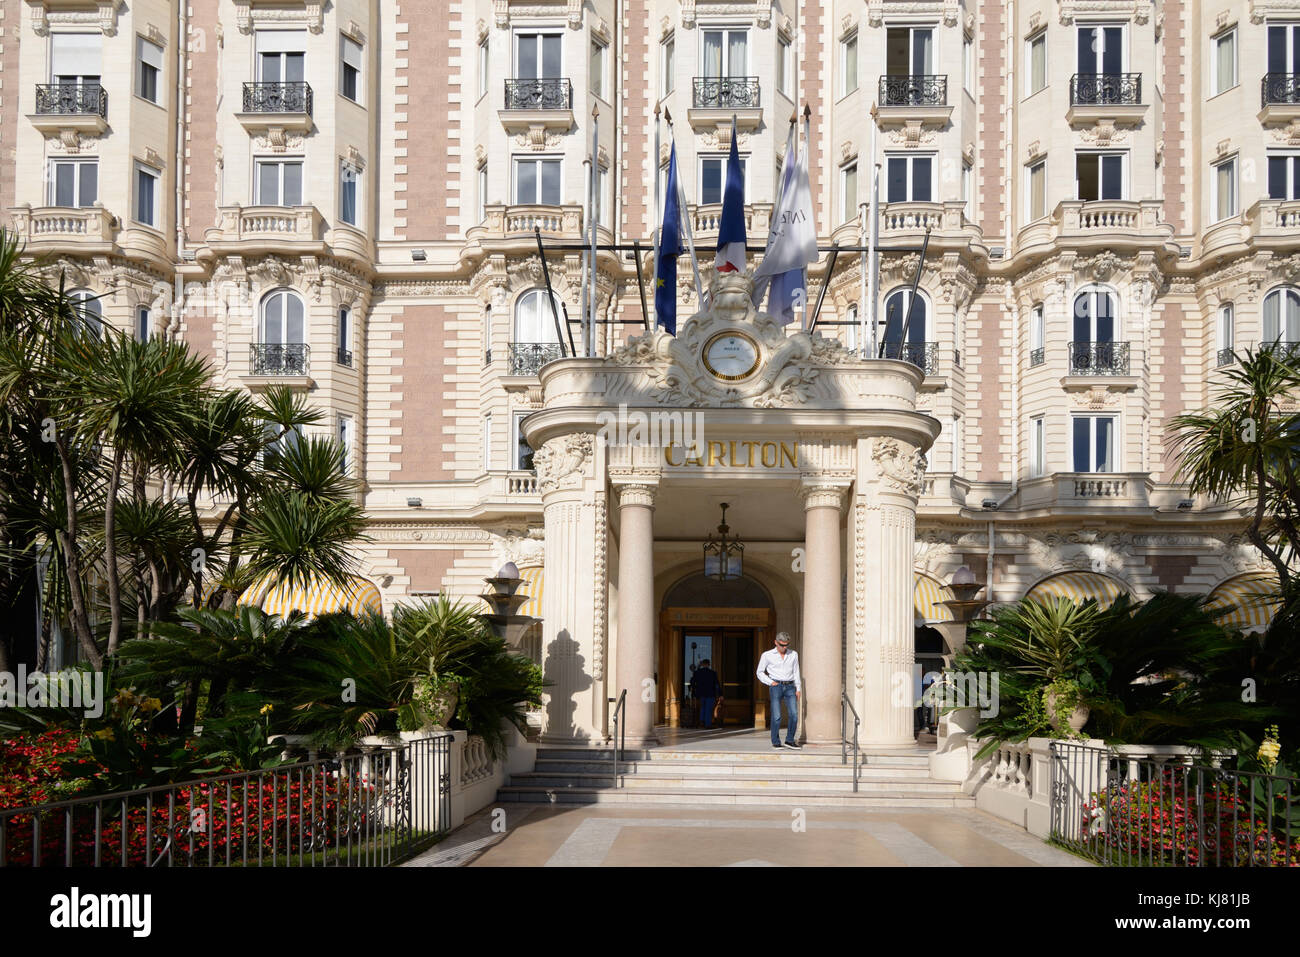 Ingresso al Luxury InterContinental Carlton Hotel, costruito nel 1911, sul Boulevard de la Croisette, Cannes, Alpes-Maritimes, Francia Foto Stock